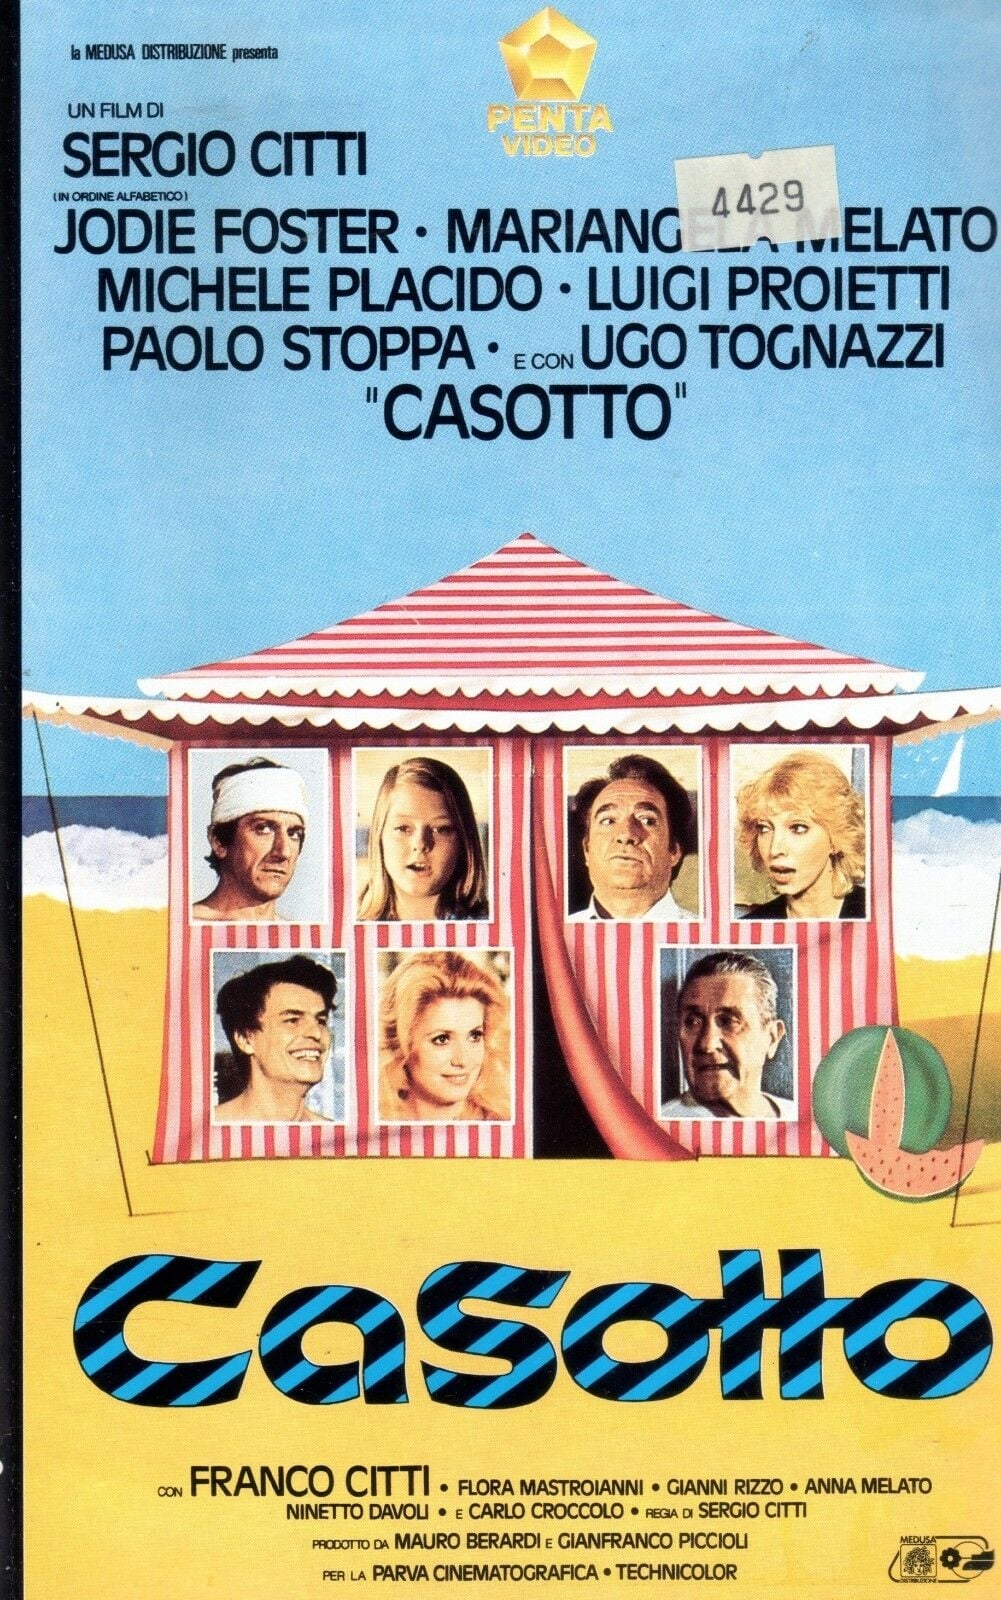 Plakat von "Strandgeflüster"